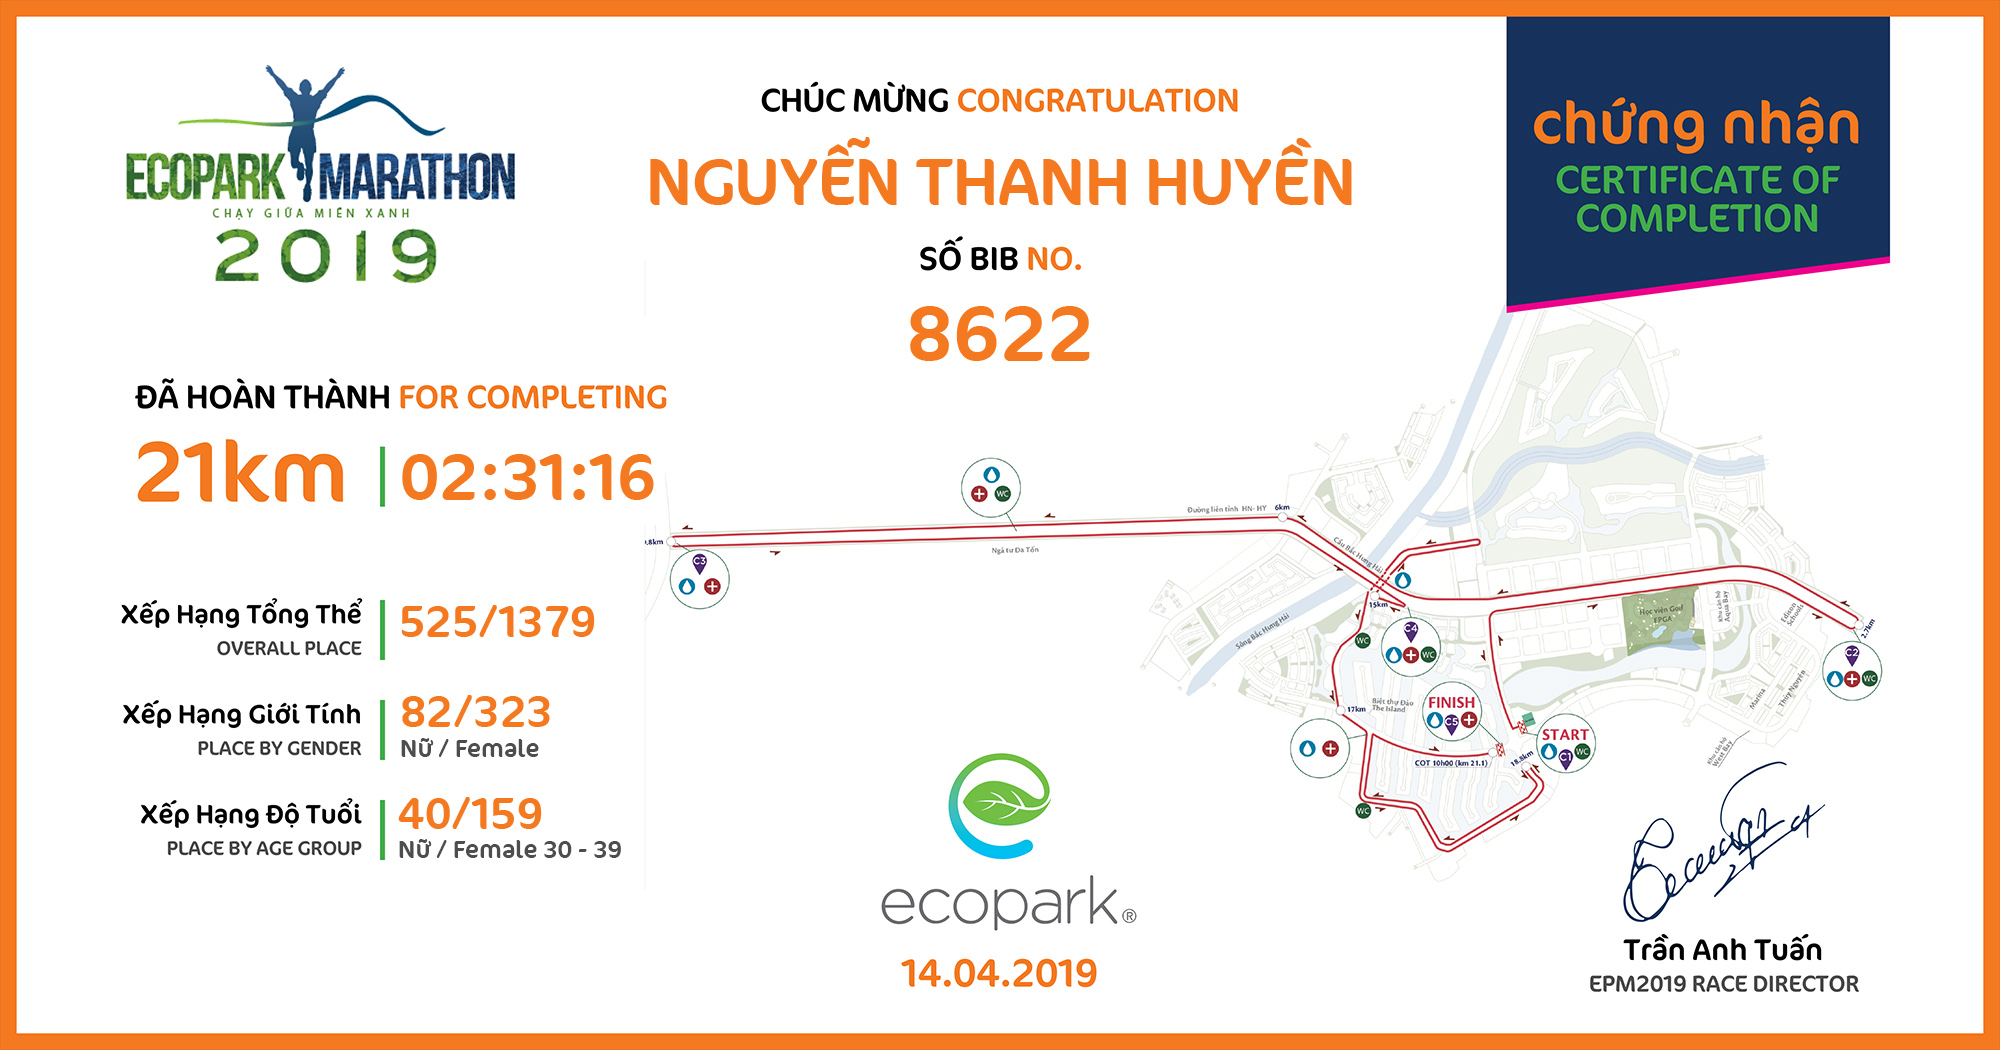 8622 - Nguyễn Thanh Huyền